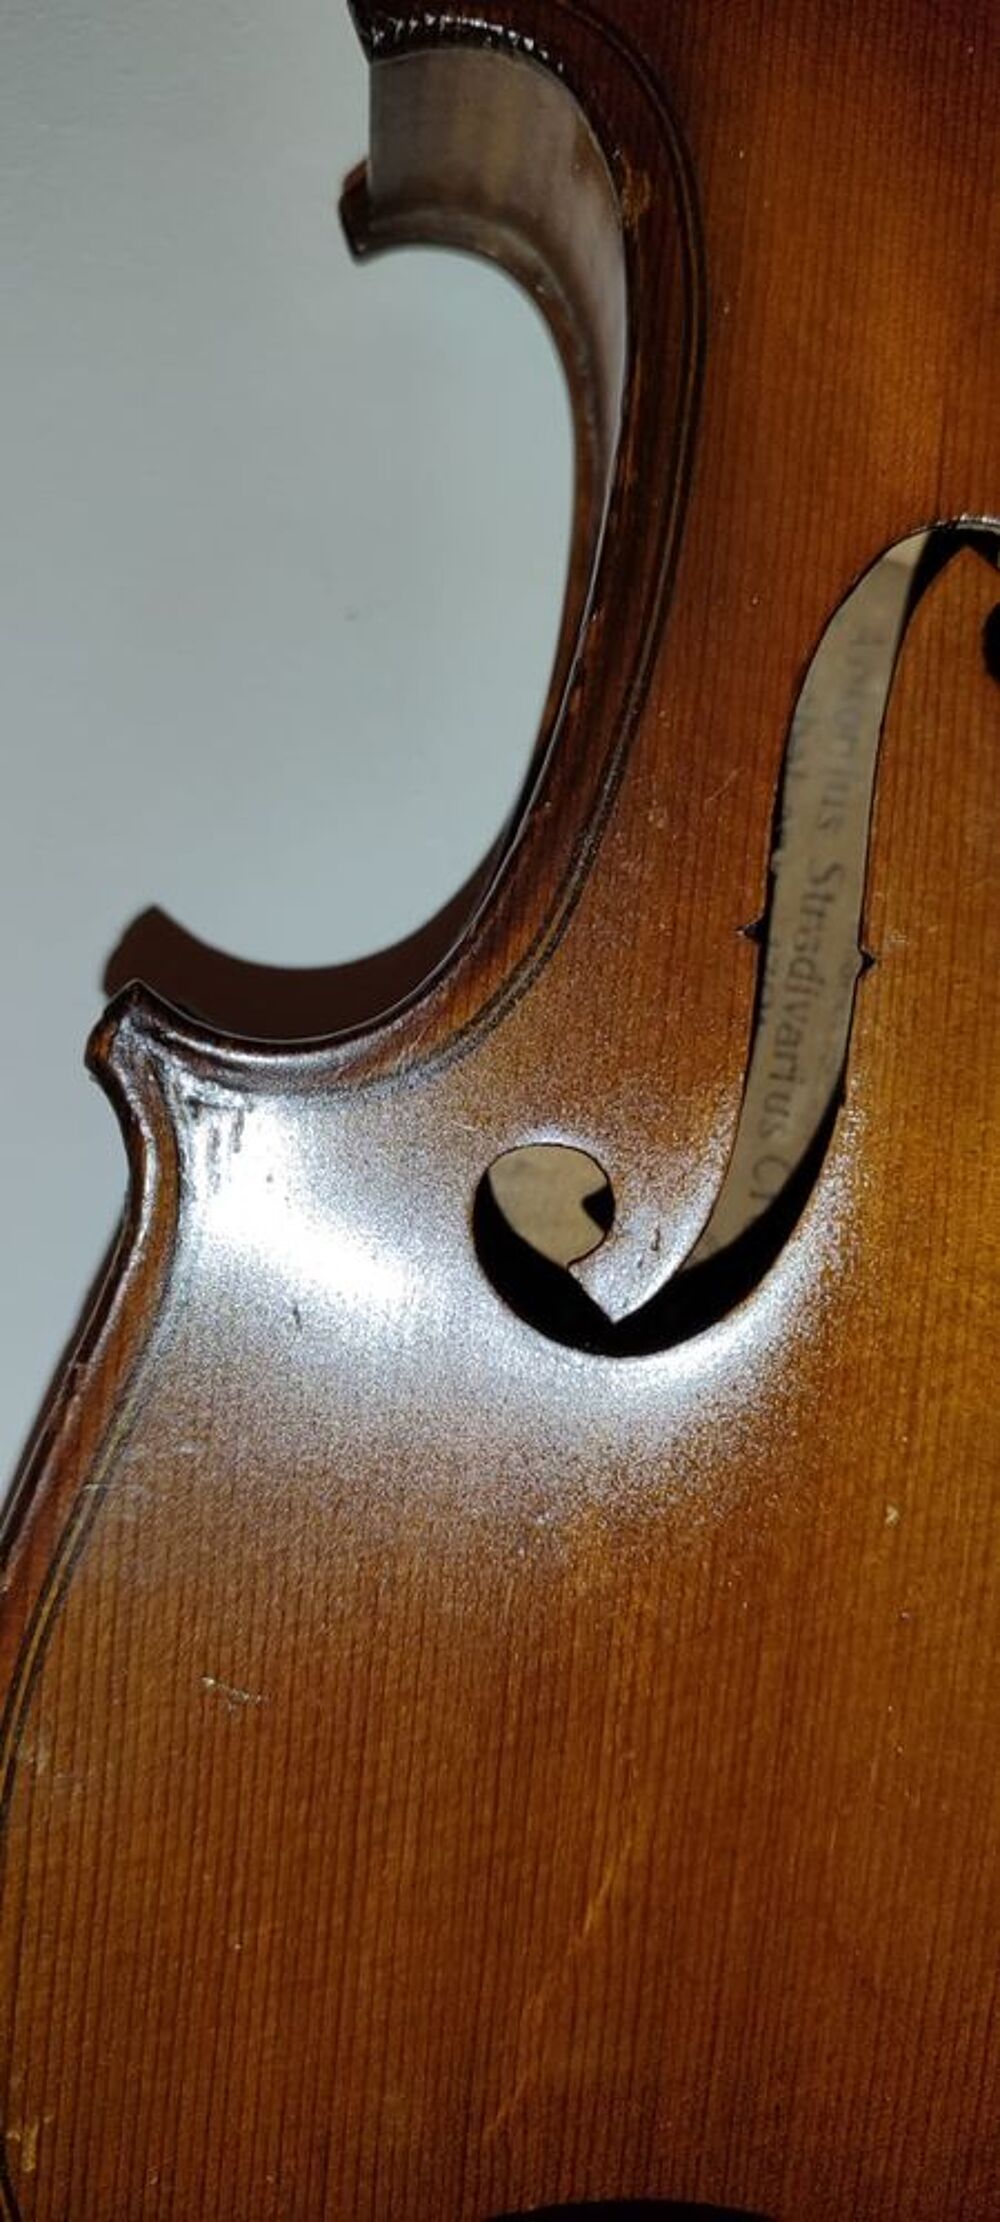 Violon Ancien 3/4 tr&eacute;s belle Replique de Antonio Stradivari. Instruments de musique